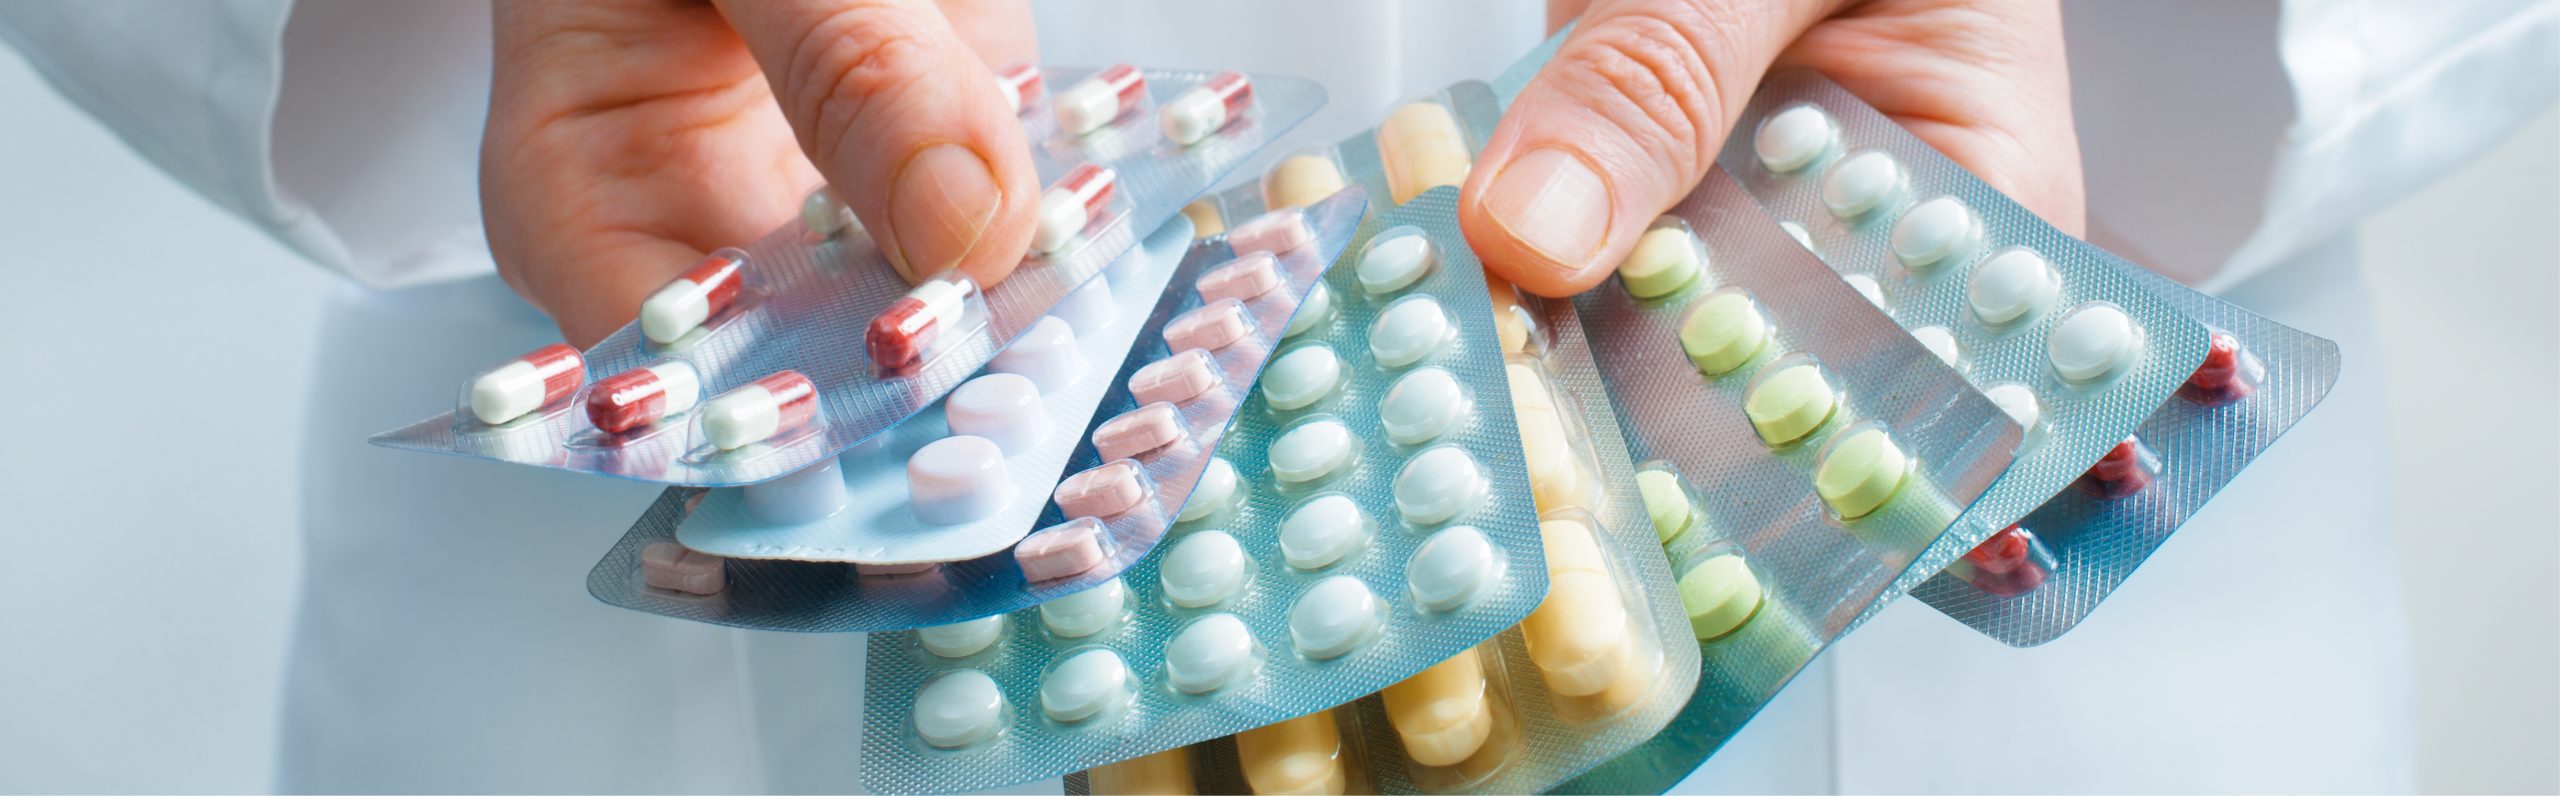 Najwyższa jakość i bezpieczeństwo produktów farmaceutycznych. Blistry z kolorowymi tabletkami. Kompleksowa obsługa firm farmaceutycznych.